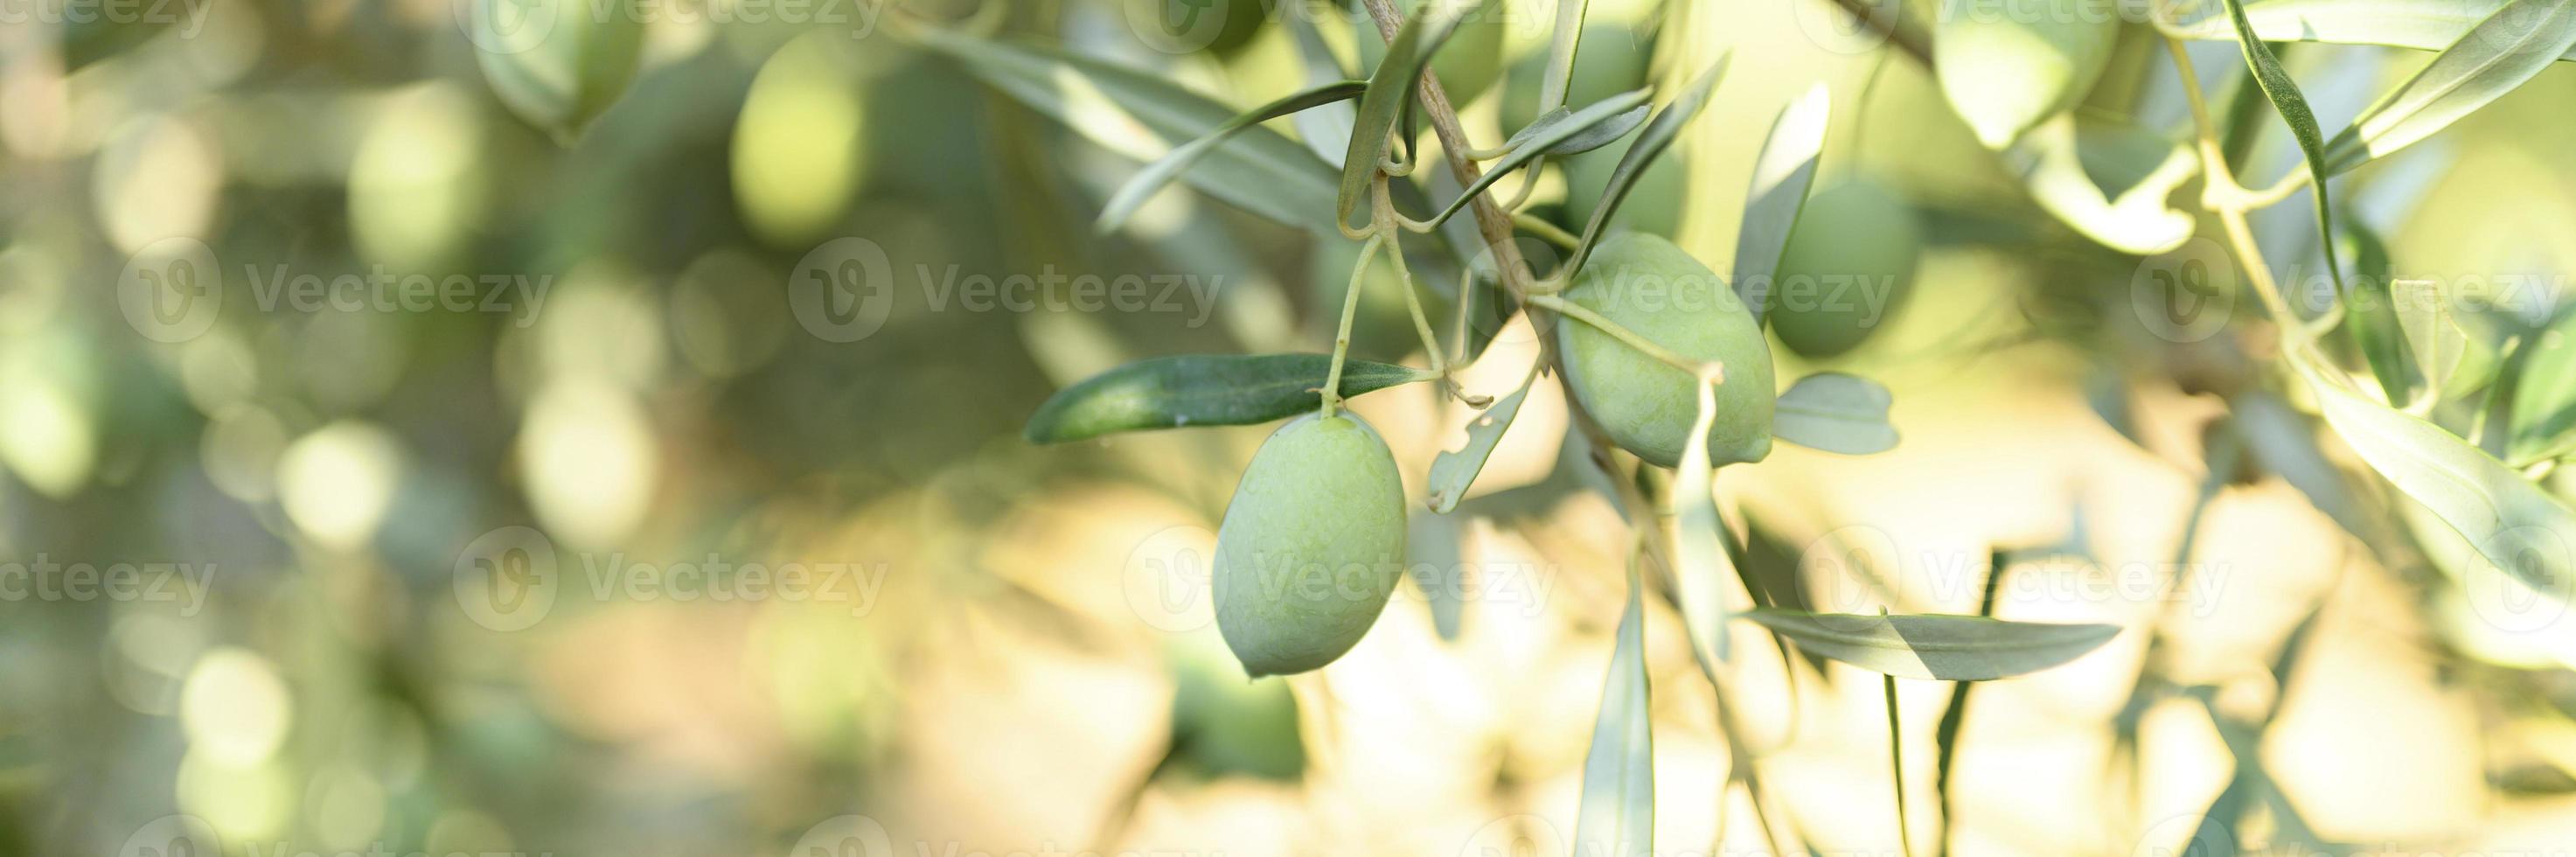 olive verdi che crescono su un ramo di ulivo in giardino foto